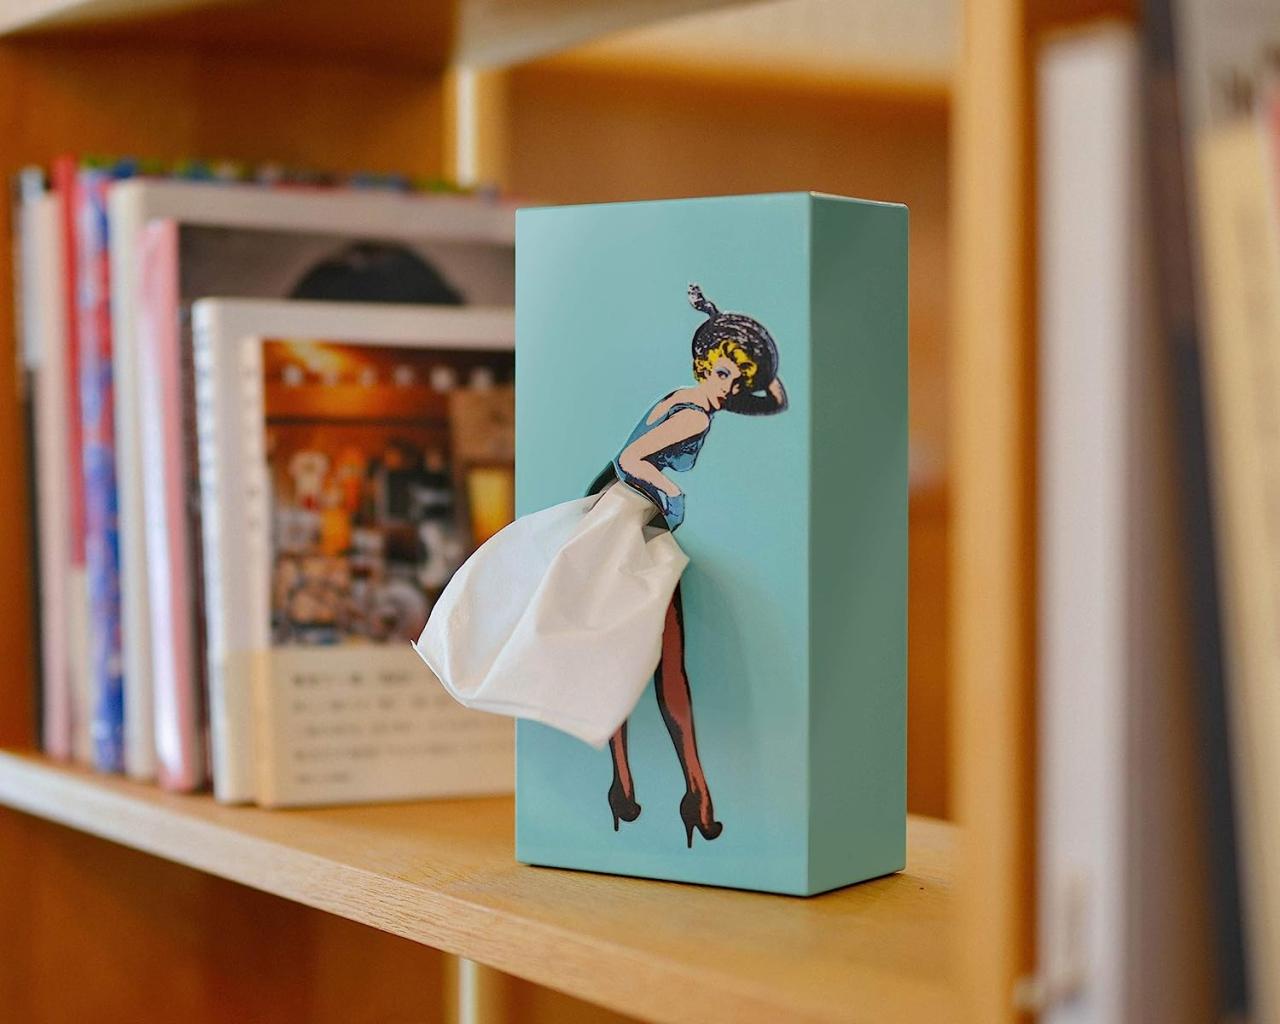 Flying Skirt Tissue Box - Charming Vintage Pop Art Tissue Holder - dc679fd614a9e265d4d3d1451e4b82bb